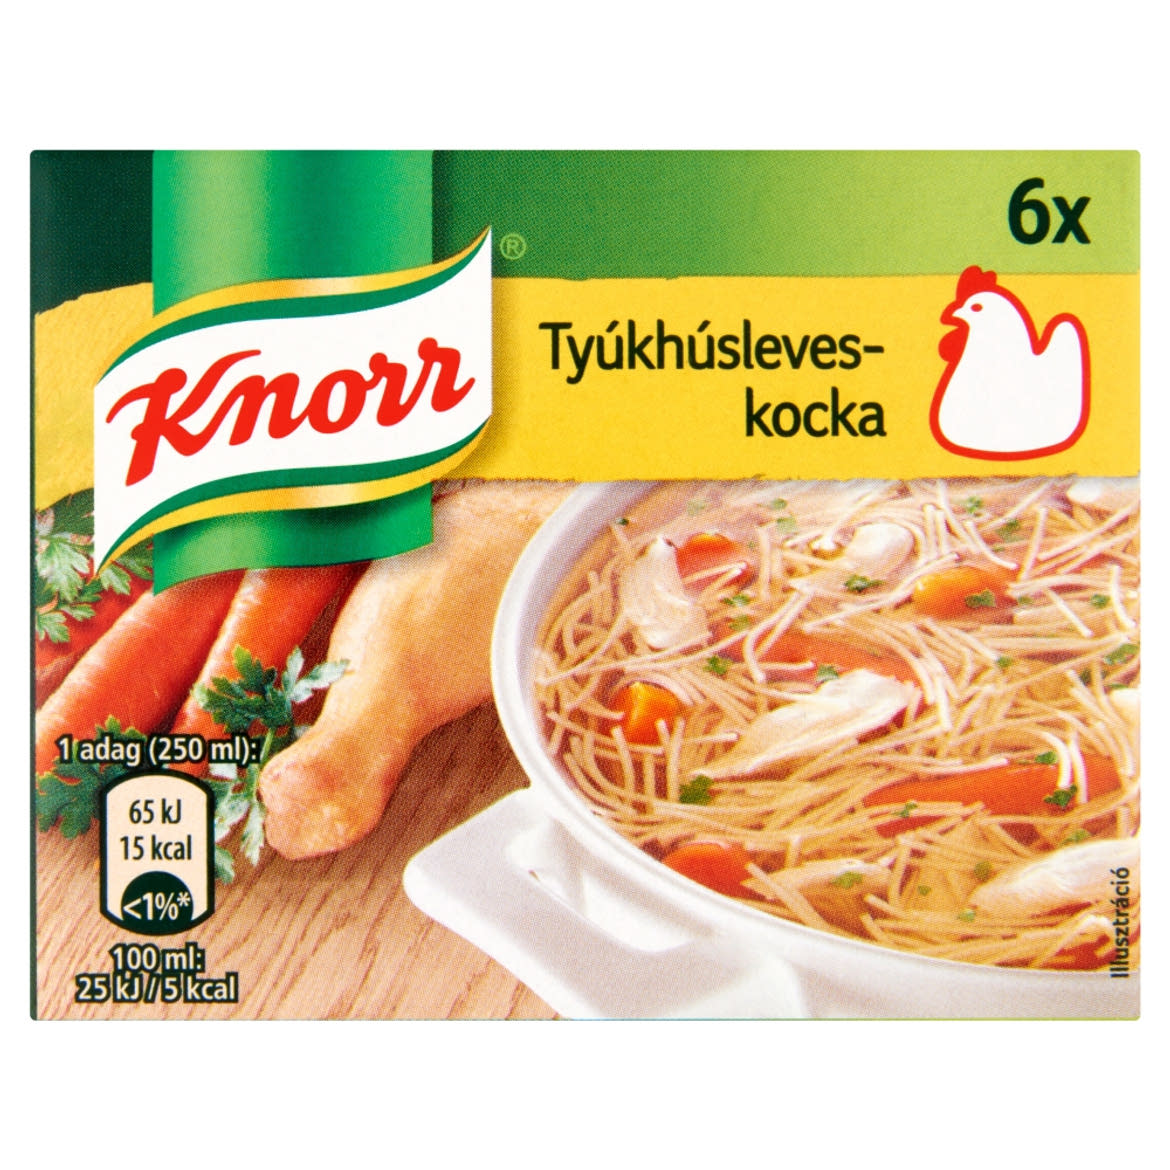 Knorr tyúkhúsleveskocka 6 db